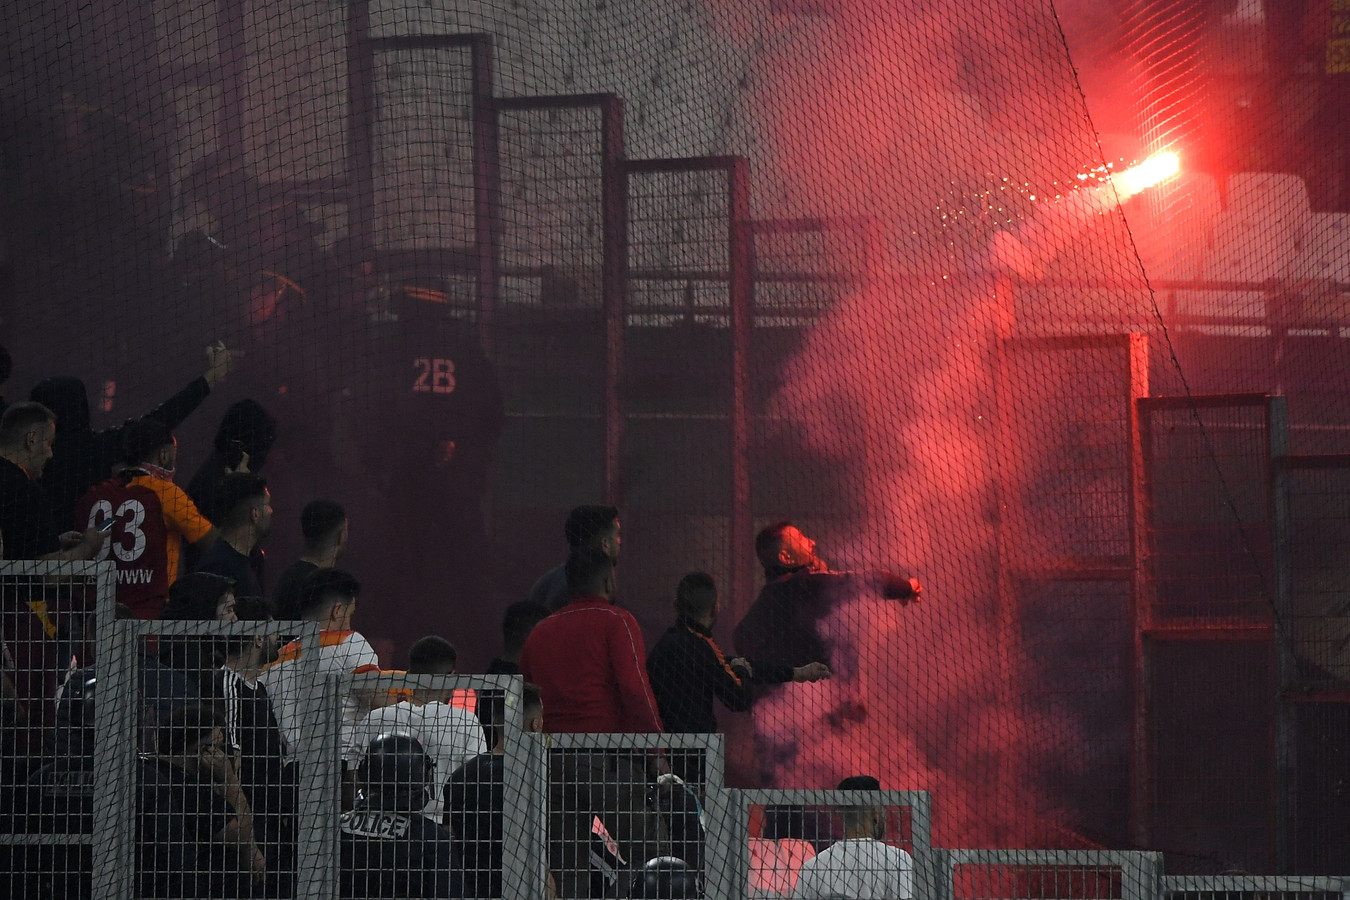 Vuurwerk tijdens het duel tussen Olympique Marseille en Galatasaray.